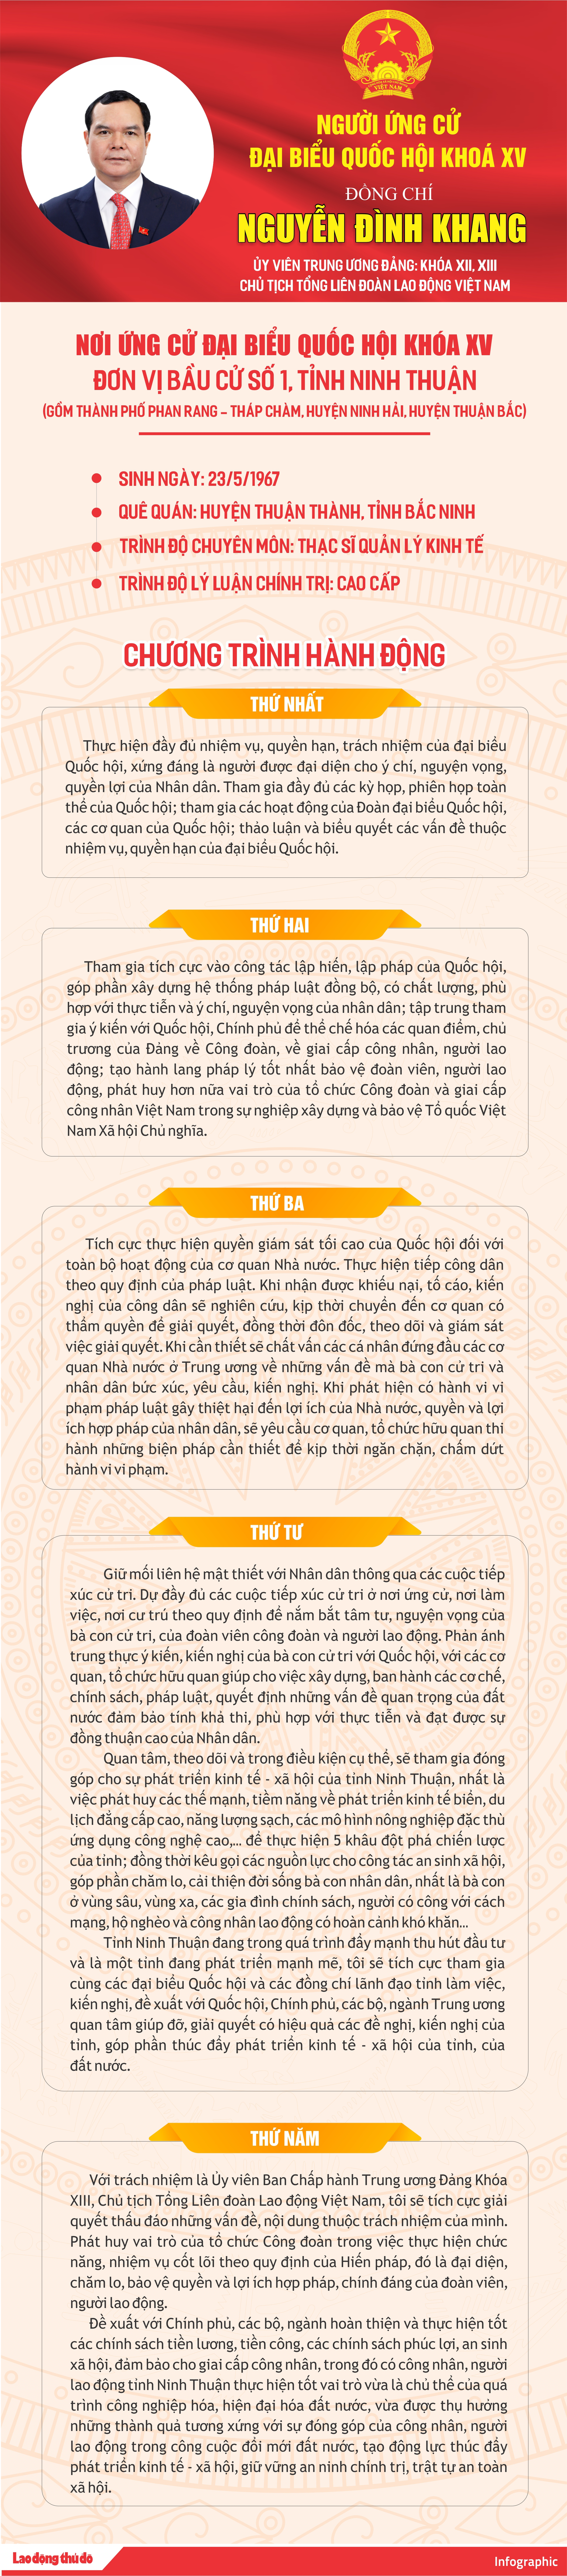 [Infographics] Chương trình hành động của ứng cử viên đại biểu Quốc hội khóa XV Nguyễn Đình Khang